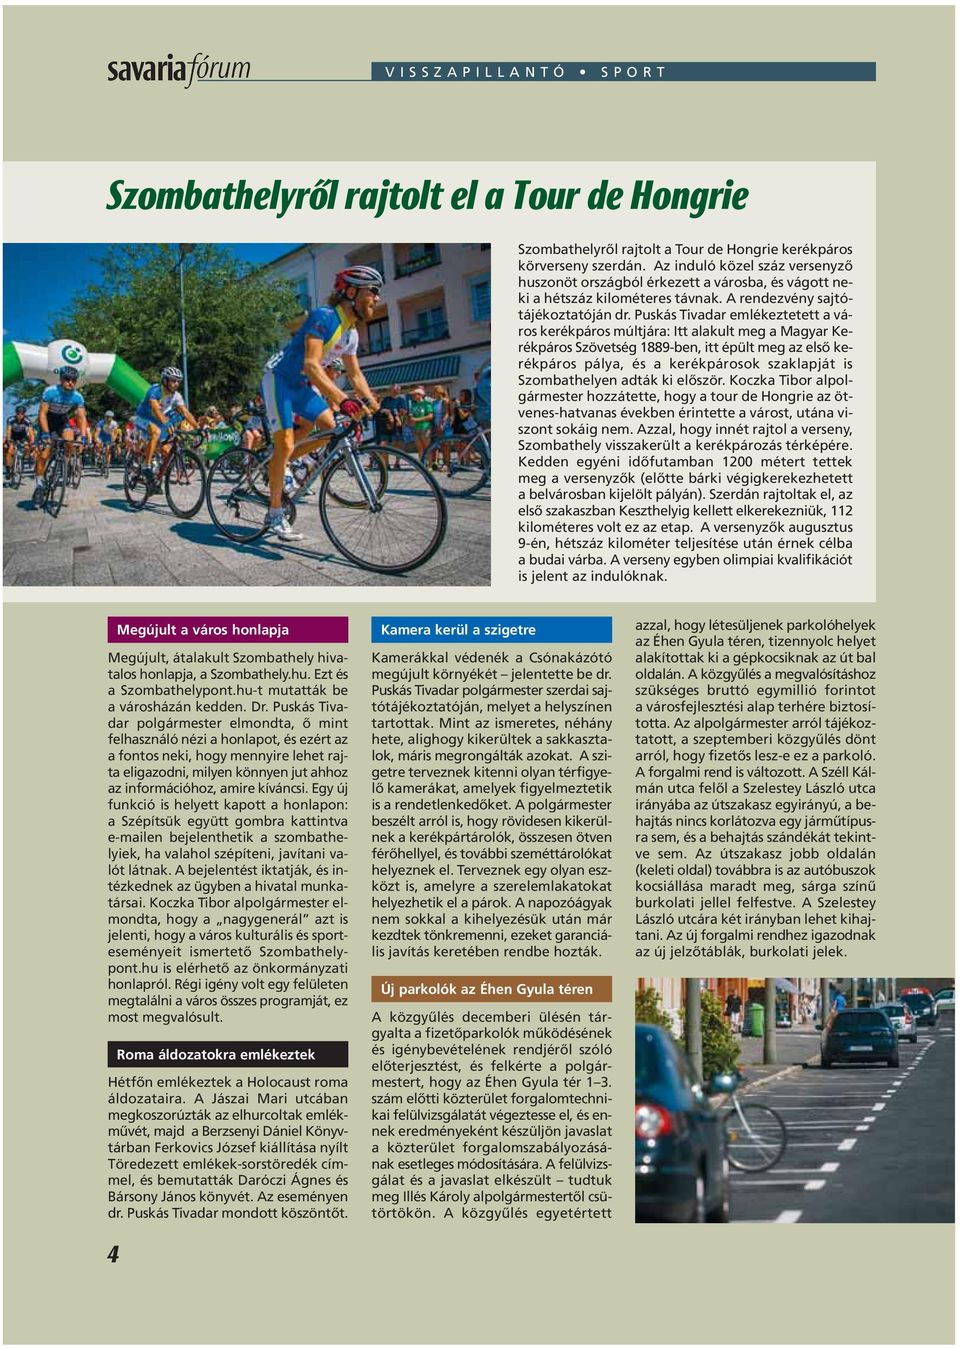 Puskás Tivadar emlékeztetett a város kerékpáros múltjára: Itt alakult meg a Magyar Kerékpáros Szövetség 1889-ben, itt épült meg az elsô kerékpáros pálya, és a kerékpárosok szaklapját is Szombathelyen